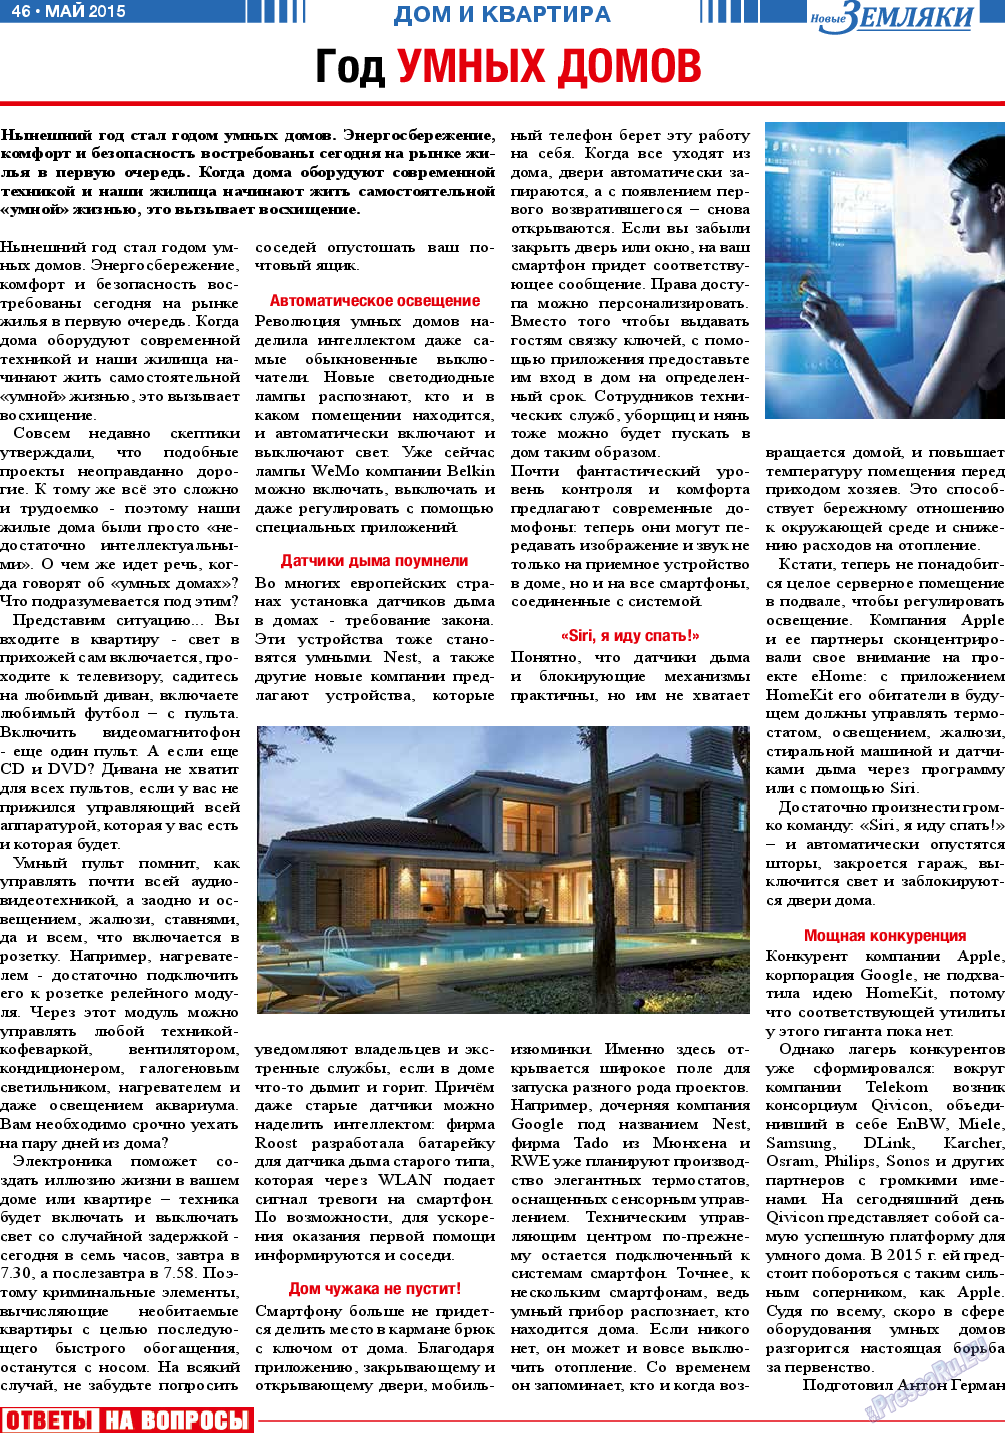 Новые Земляки, газета. 2015 №5 стр.46